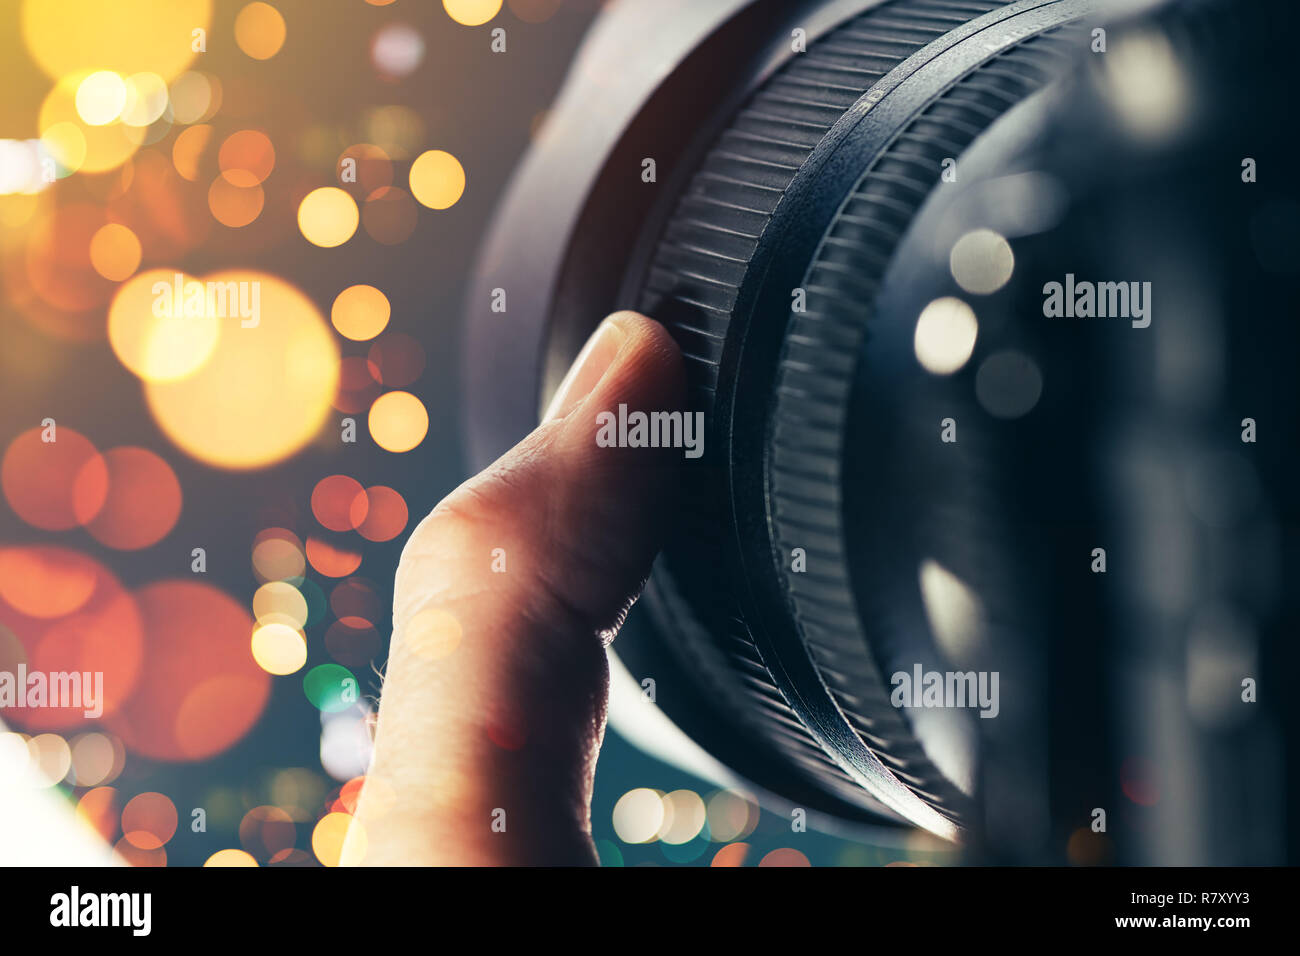 Fotografen mit Zoom Objektiv an DSLR-Kamera, in der Nähe der Finger drehen  Sie den Ring auf fotografische Geräte teil Stockfotografie - Alamy